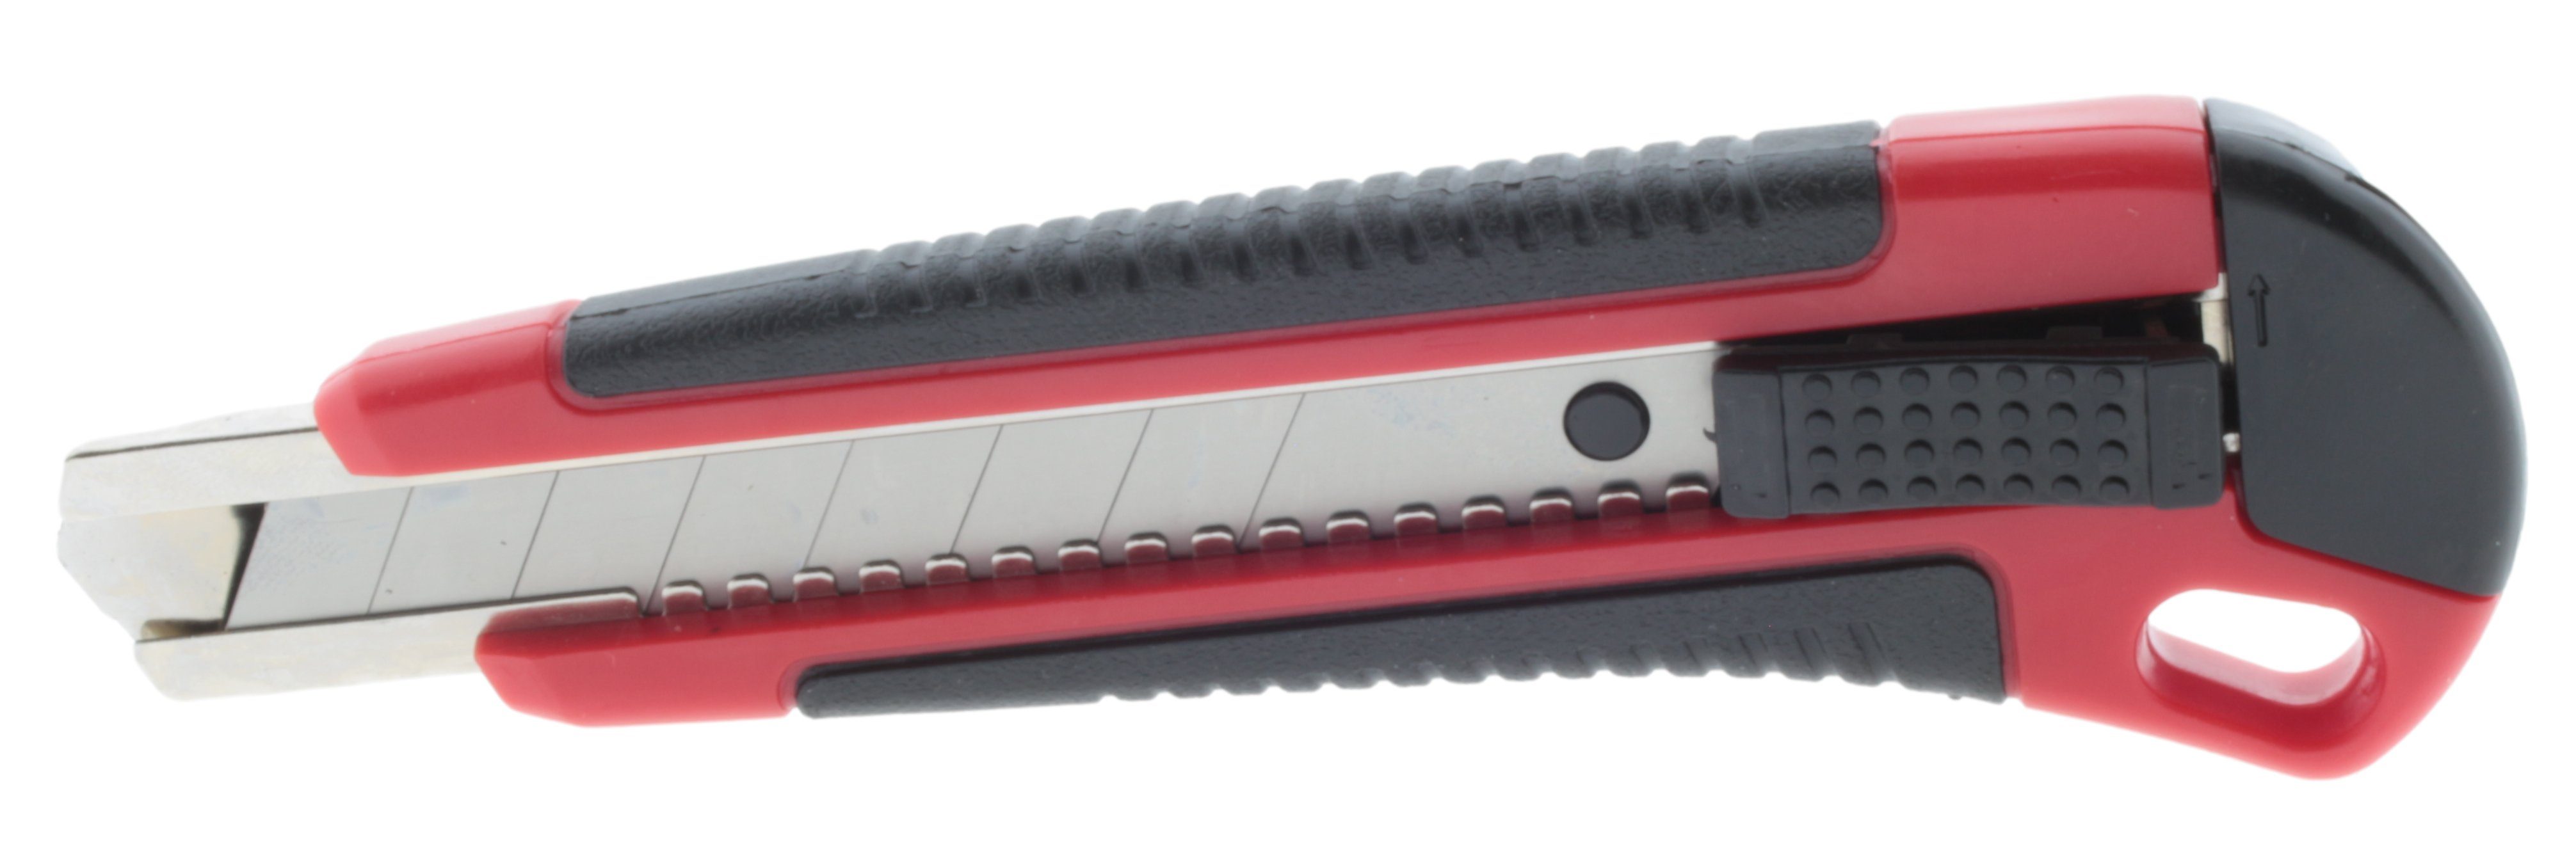 MEISTERCRAFT Cuttermesser Cuttermesser Set Ersatzklingen 8-tlg. und + mm mm 18 9